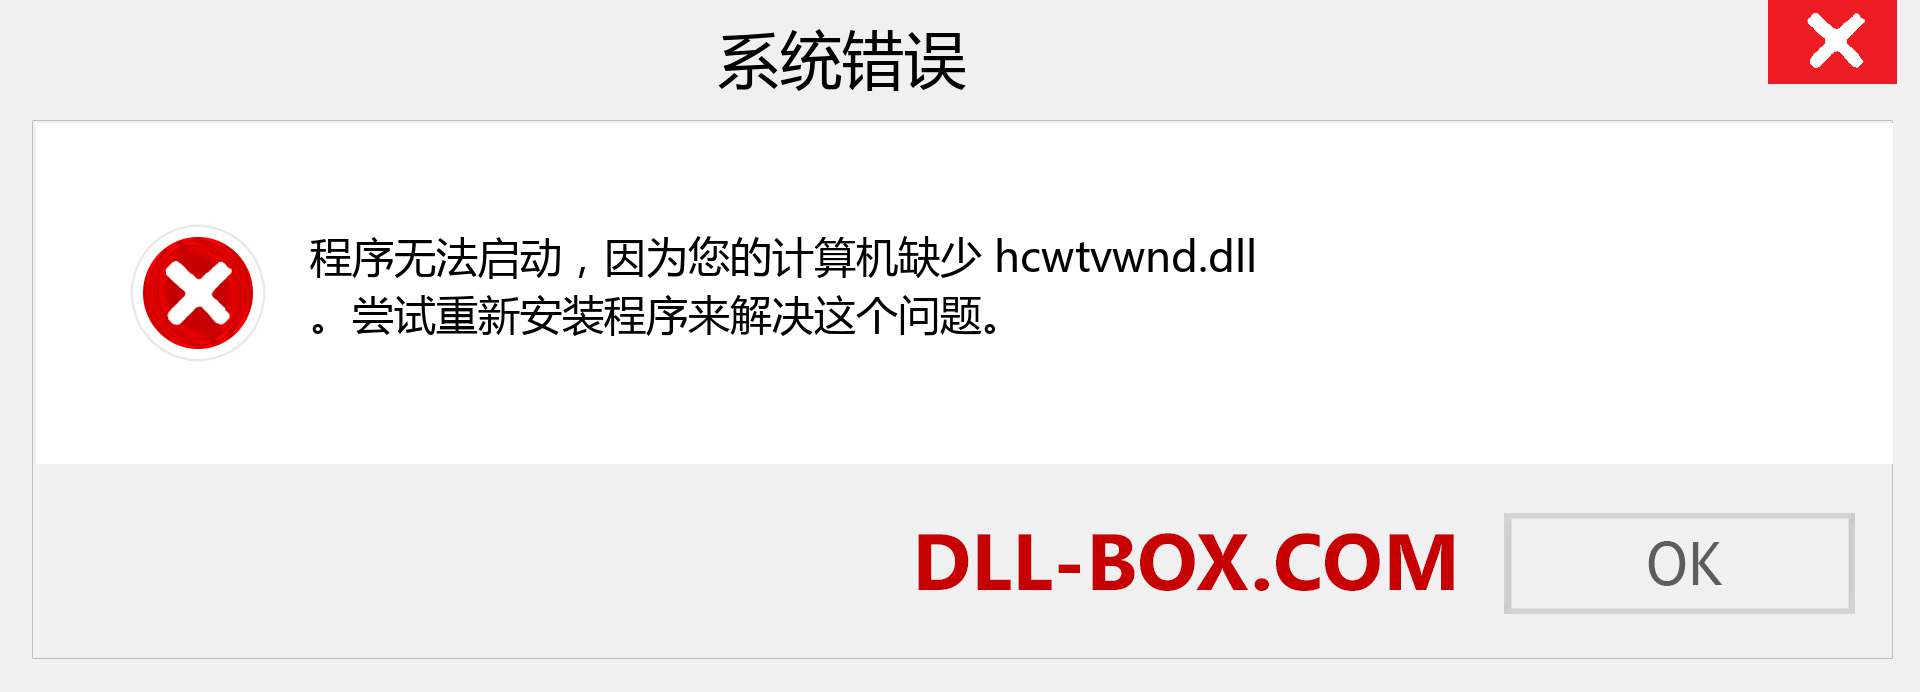 hcwtvwnd.dll 文件丢失？。 适用于 Windows 7、8、10 的下载 - 修复 Windows、照片、图像上的 hcwtvwnd dll 丢失错误